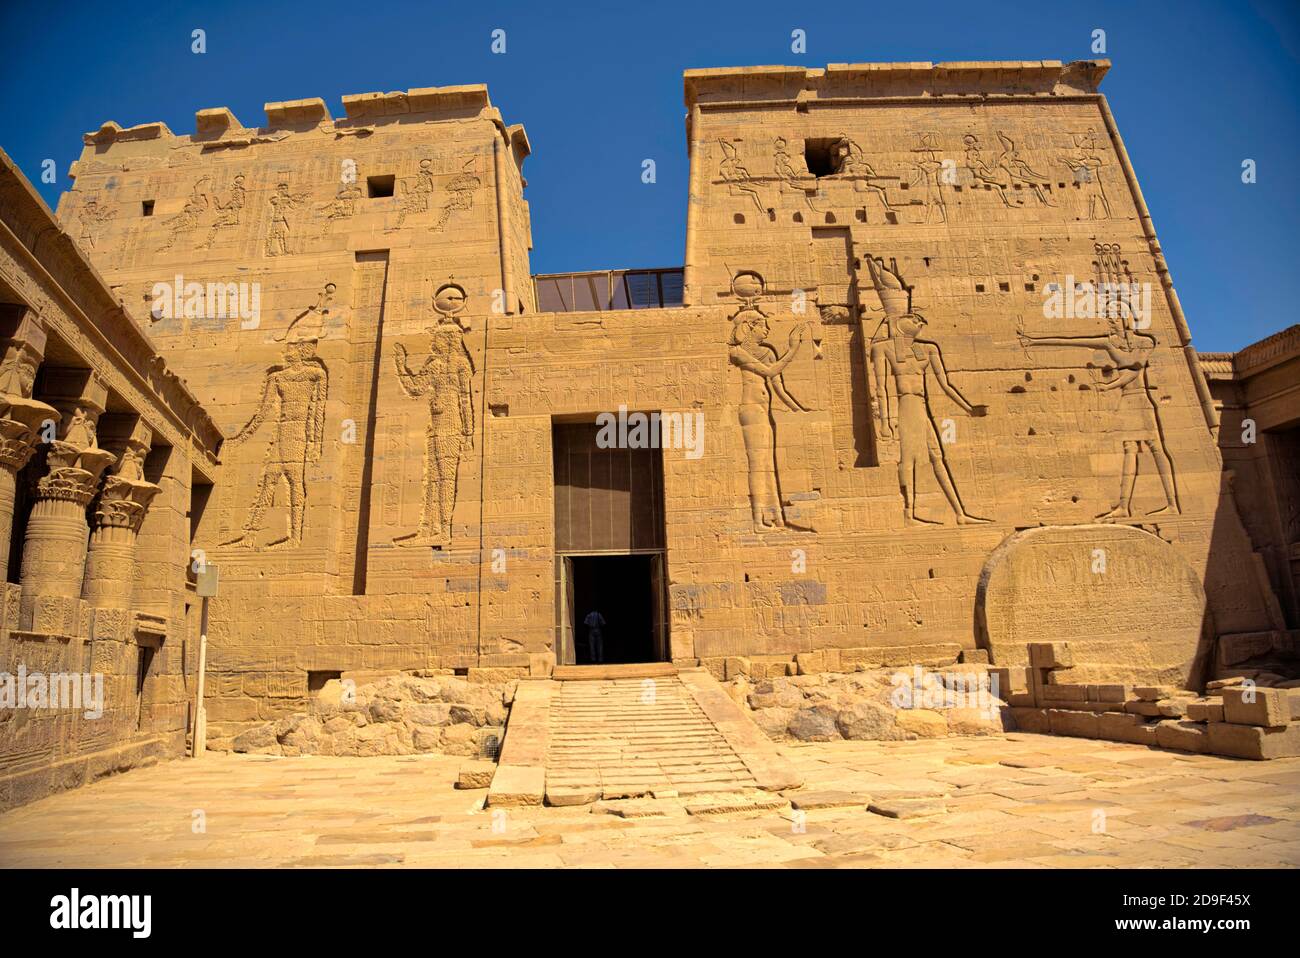 Beide Türme des zweiten Pylons haben Rillen für Fahnenstäbe wie der erste Pylon. Die Tür zwischen den Türmen stellt Ptolemäus VIII. Euergetes dar Stockfoto